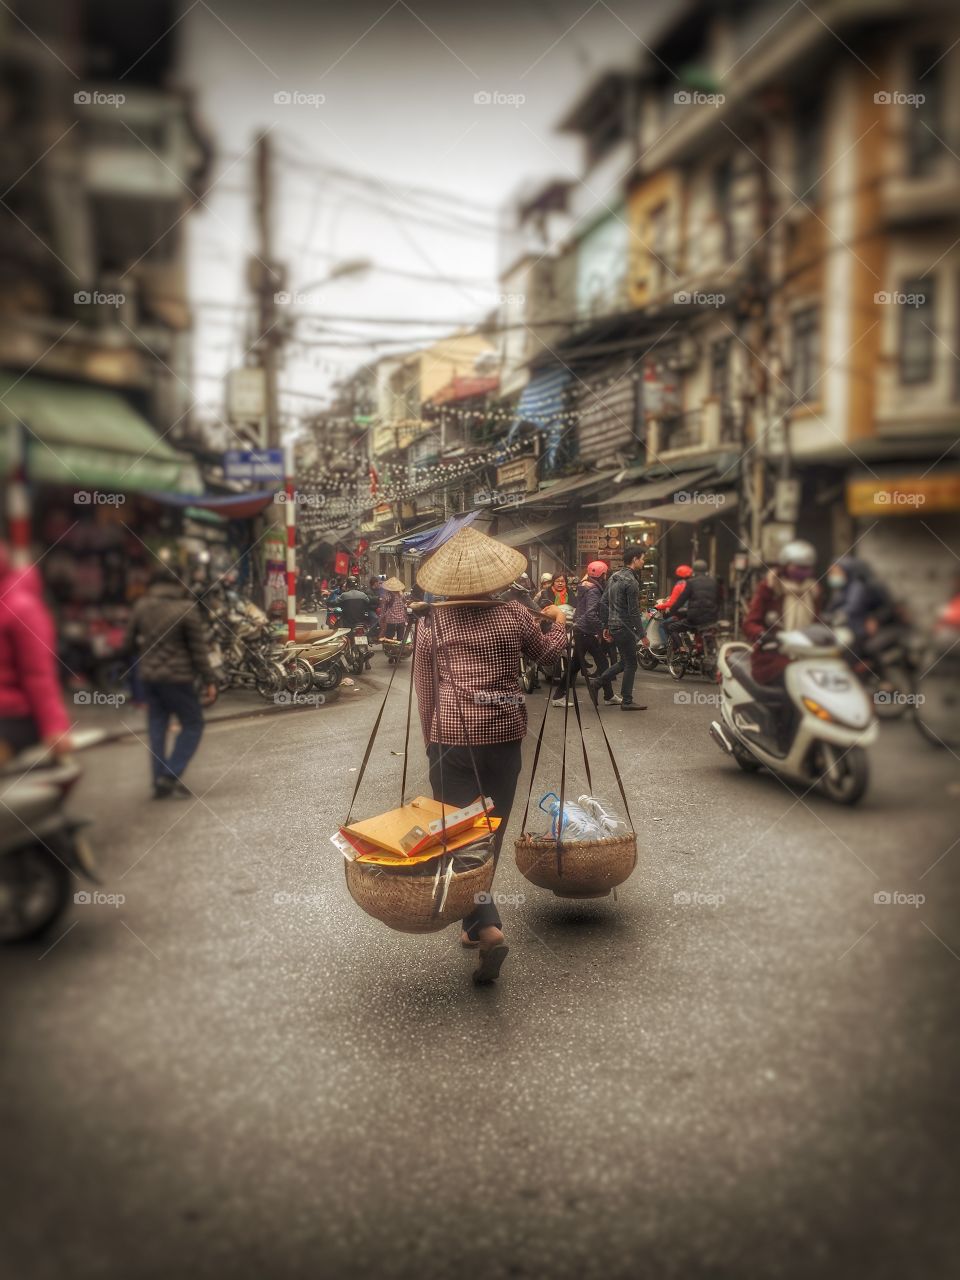 Vietnam street view